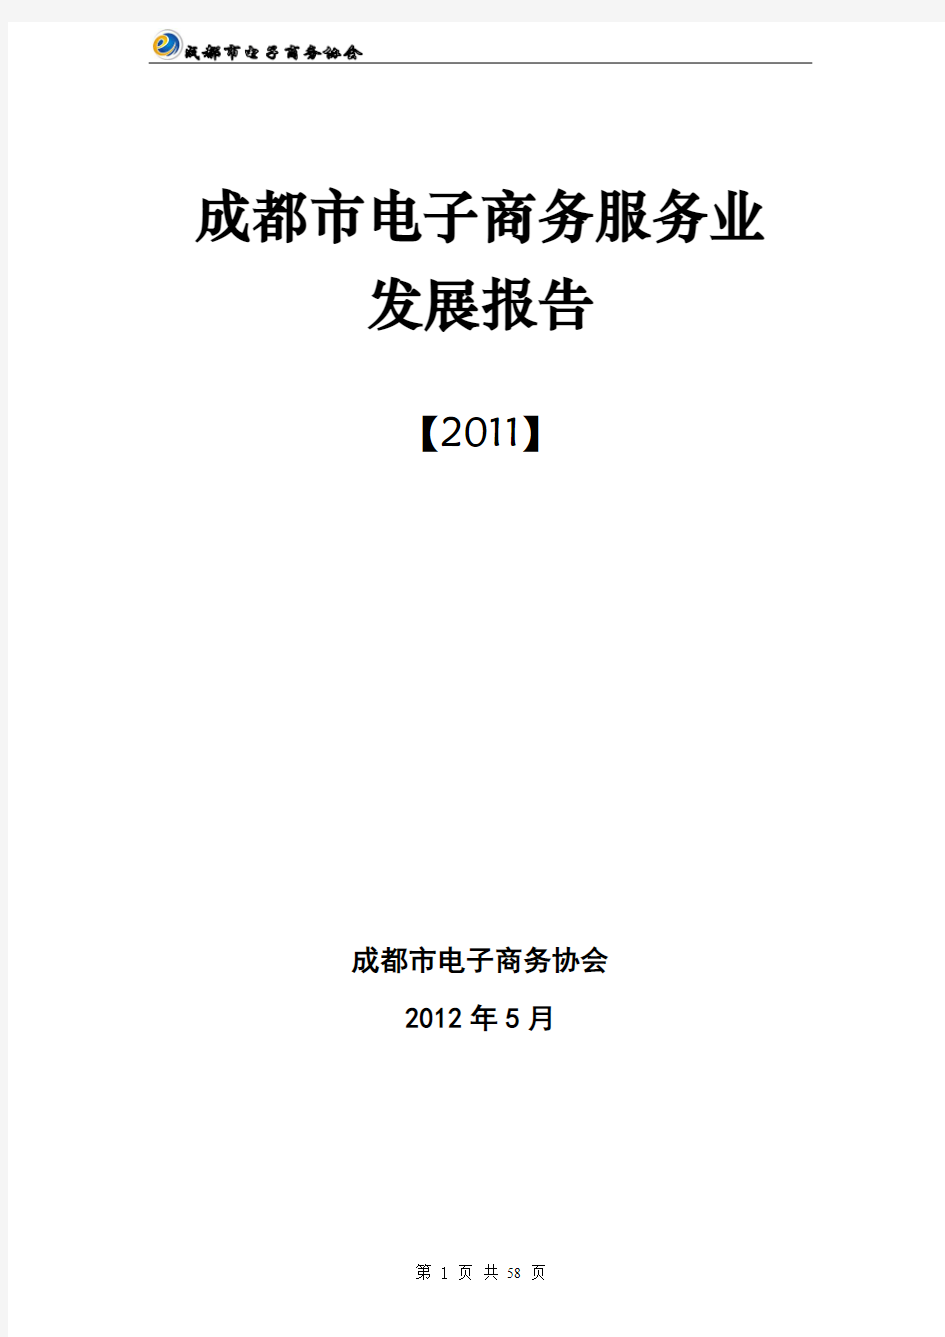 2012年成都市电子商务服务业发展报告 四川网络营销